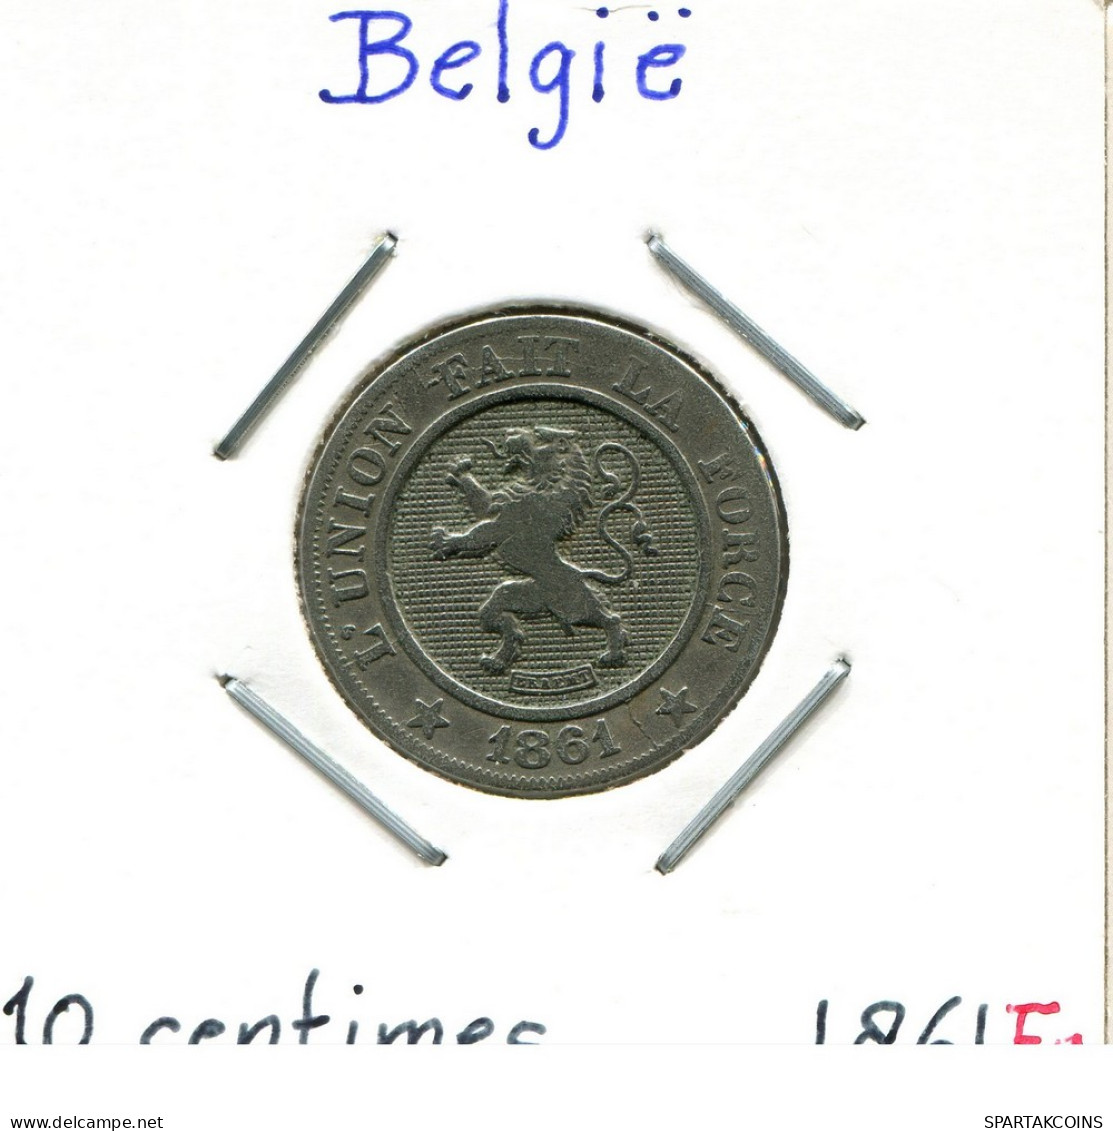 10 CENTIMES 1861 Französisch Text BELGIEN BELGIUM Münze #BA268.D - 10 Cents